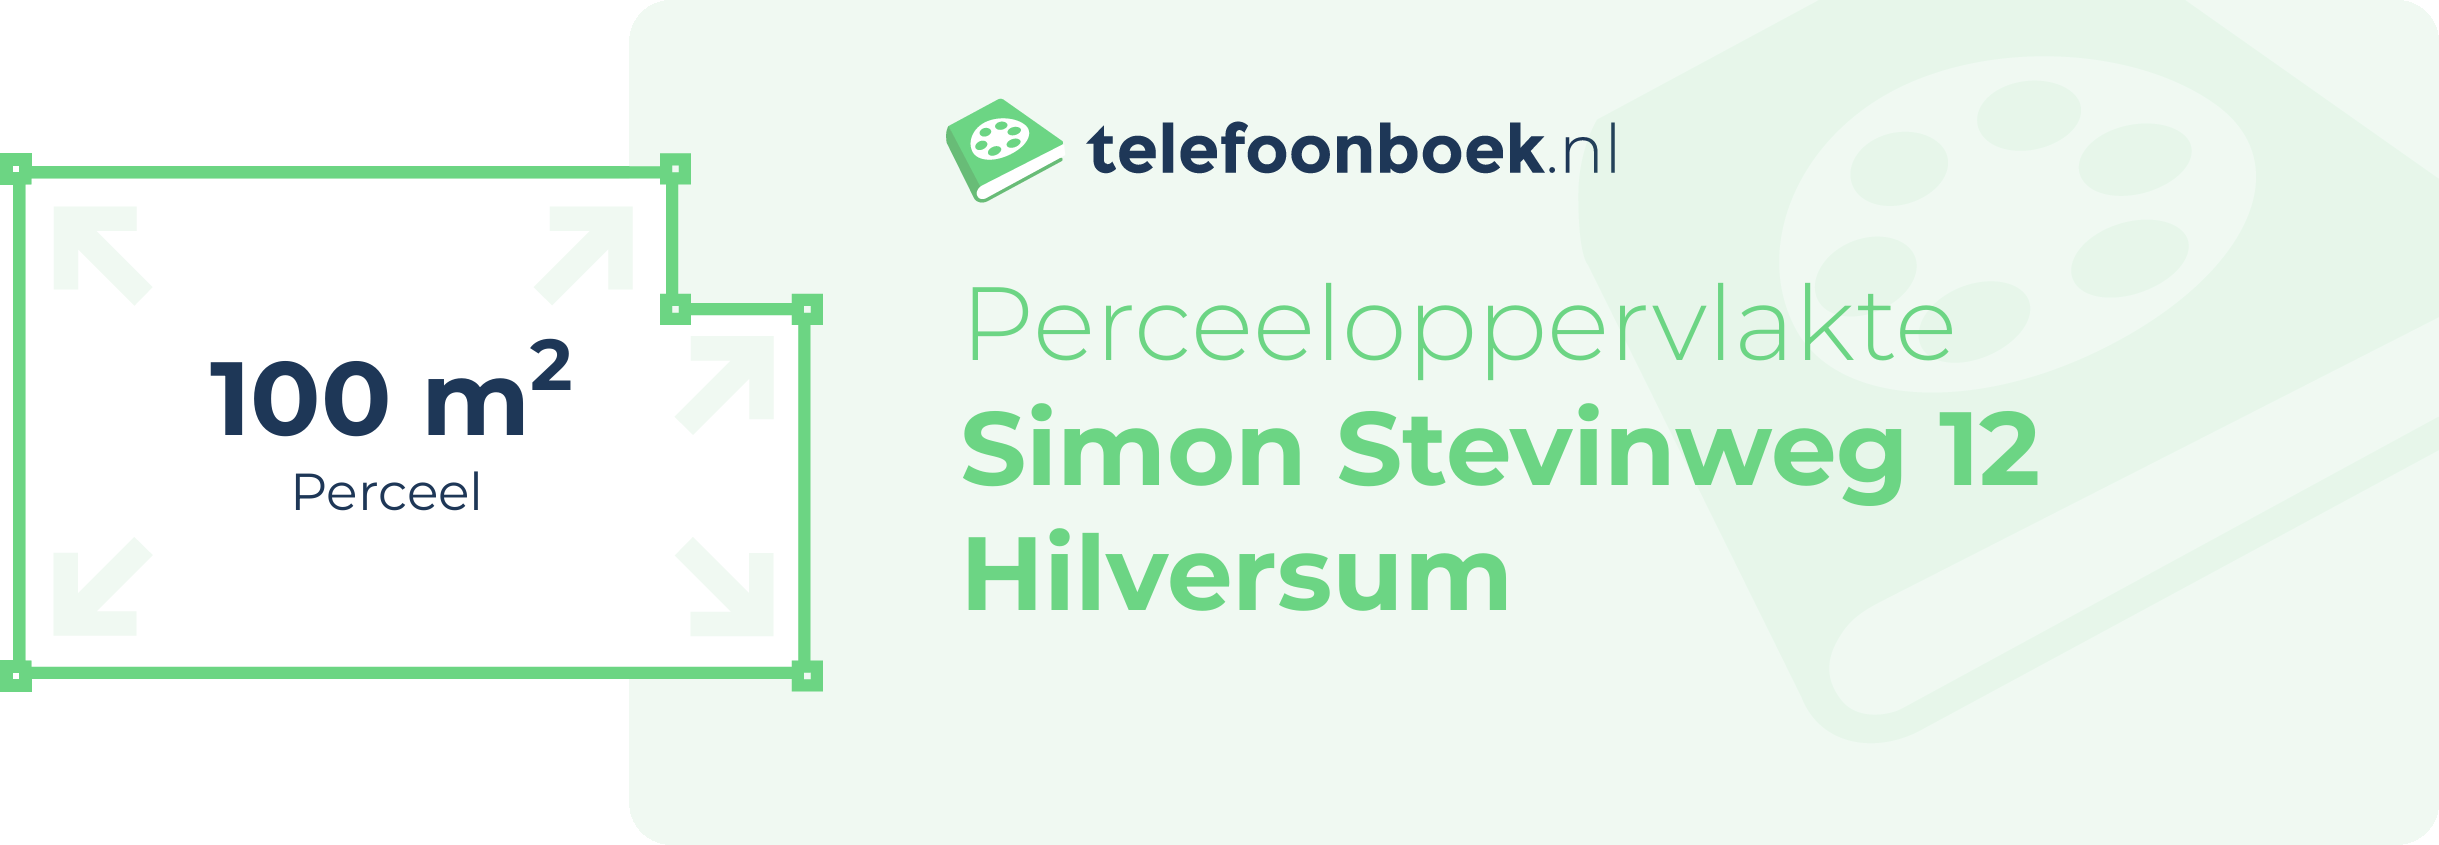 Perceeloppervlakte Simon Stevinweg 12 Hilversum